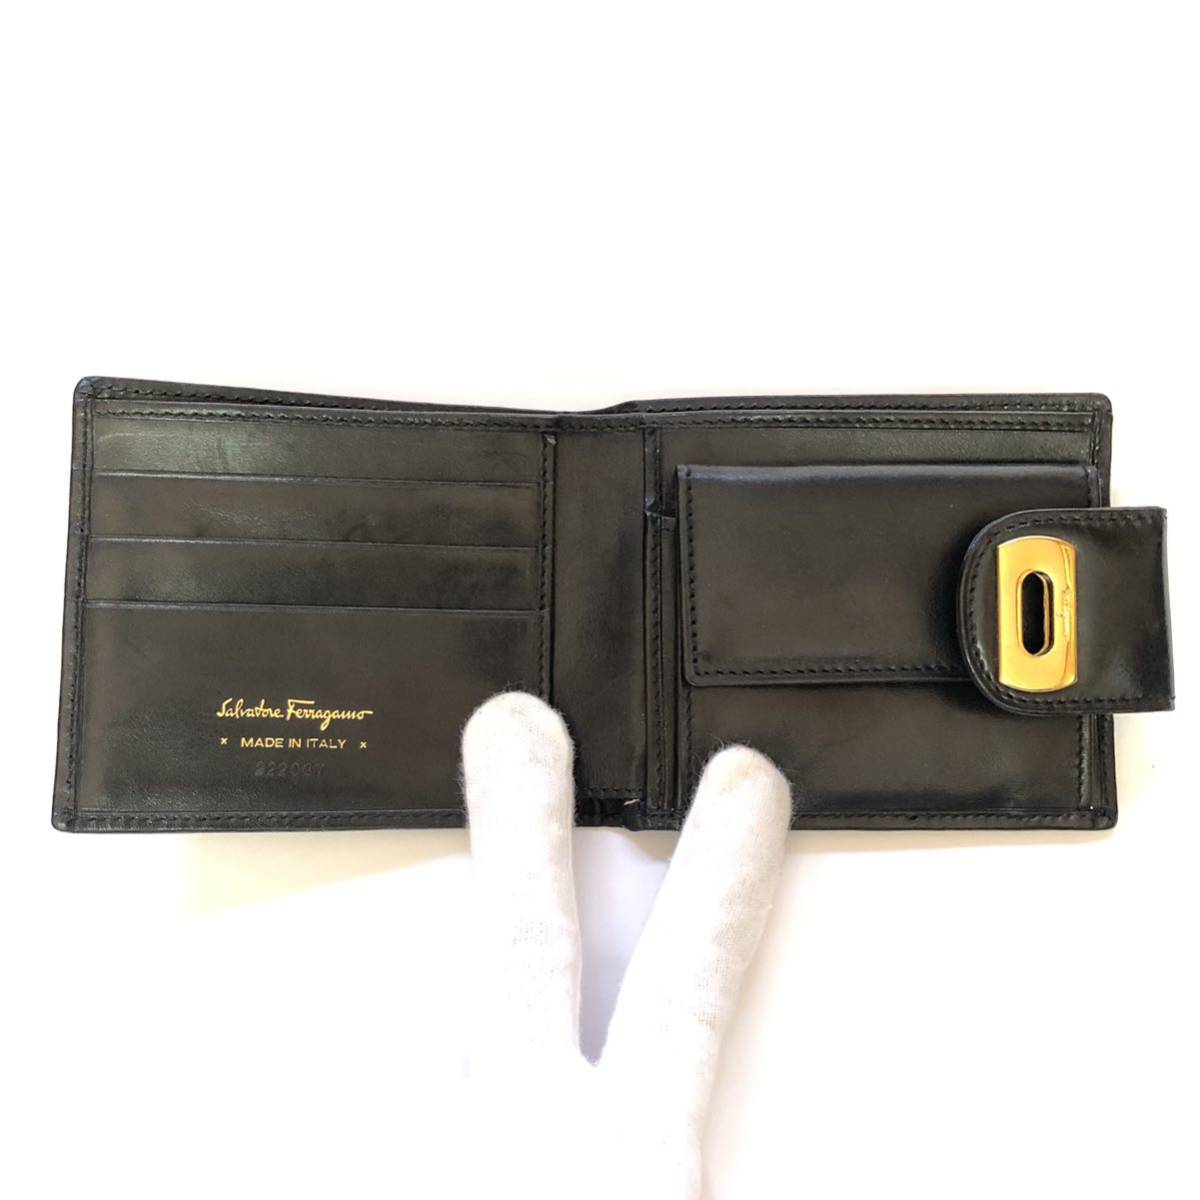 [ Salvatore Ferragamo ] подлинный товар складывать кошелек кошелек для мелочи . имеется кожа чёрный цвет серия для мужчин и женщин б/у товар -99 единый по всей стране стоимость доставки 870 иен 